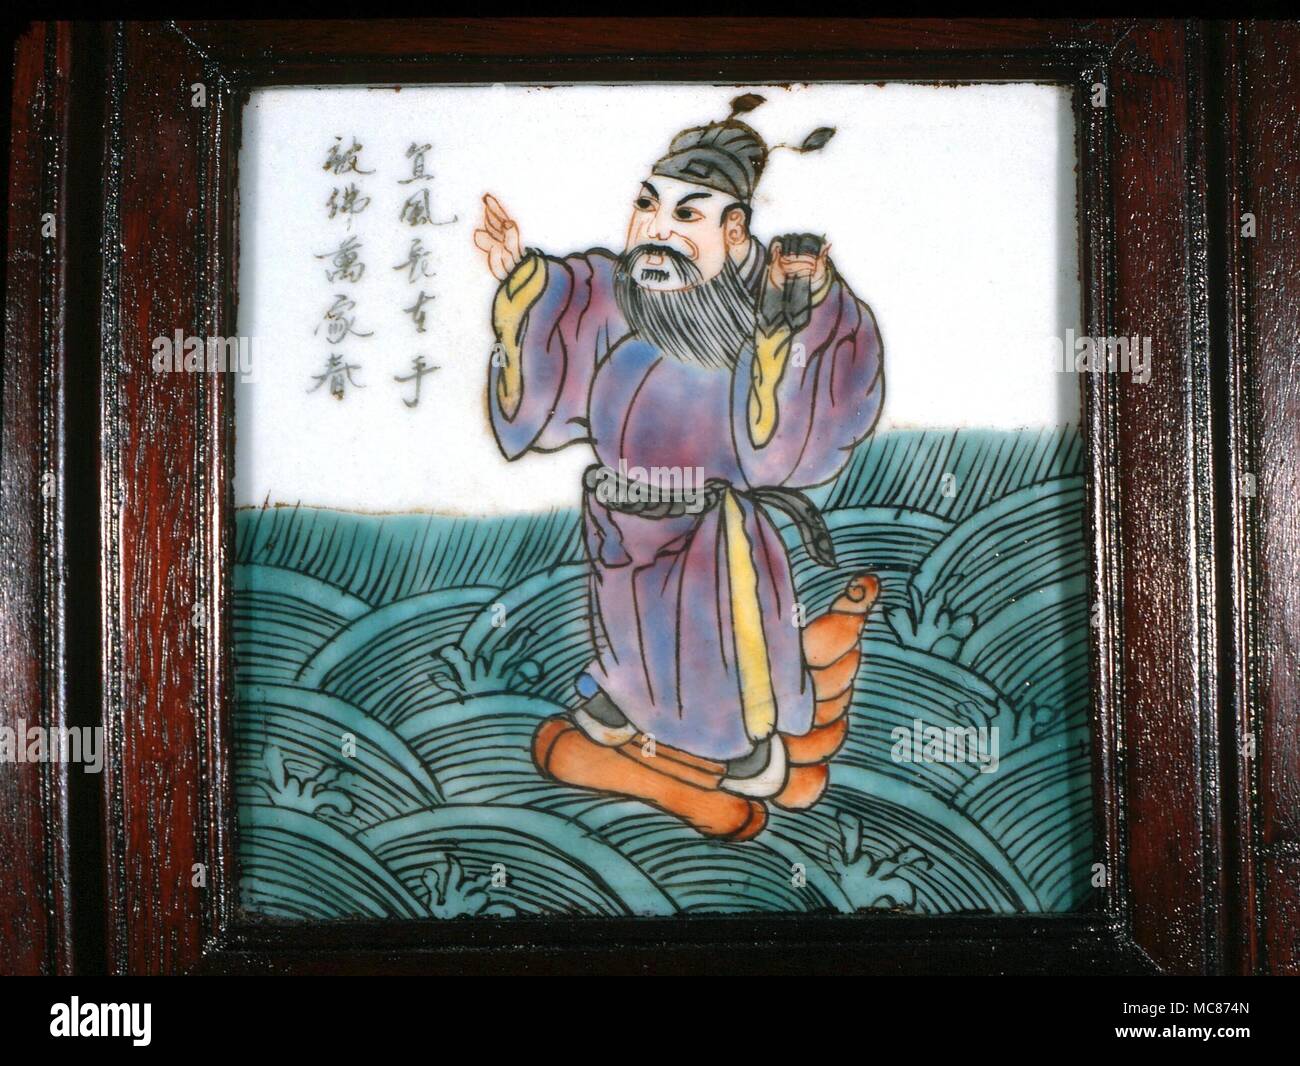 Taoísmo: Uno de los "Ocho Inmortales taoístas- (Pa Hsien). Ts'ao Kuo-chin, que usualmente lleva castañuelas, y que es el patrón de la profesión teatral. A mediados del siglo xix, mosaico chino desde una pantalla Foto de stock